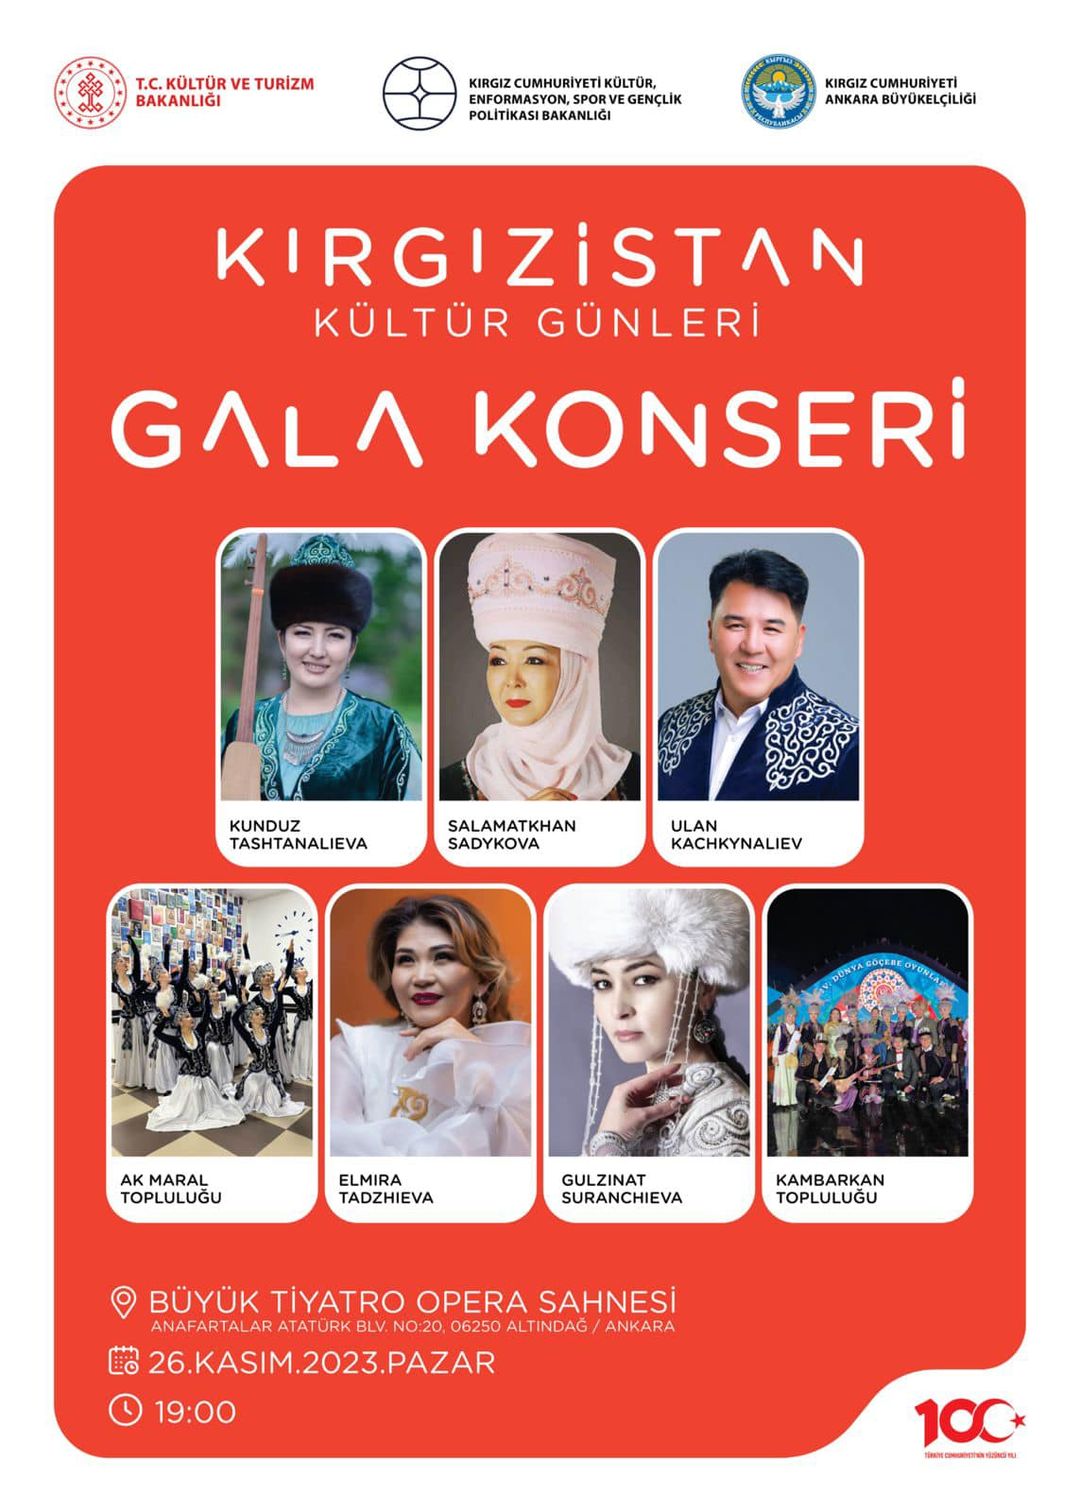 Ankara'da Kültür Köprüleri Kurulacak: Kırgızistan Kültür Günleri